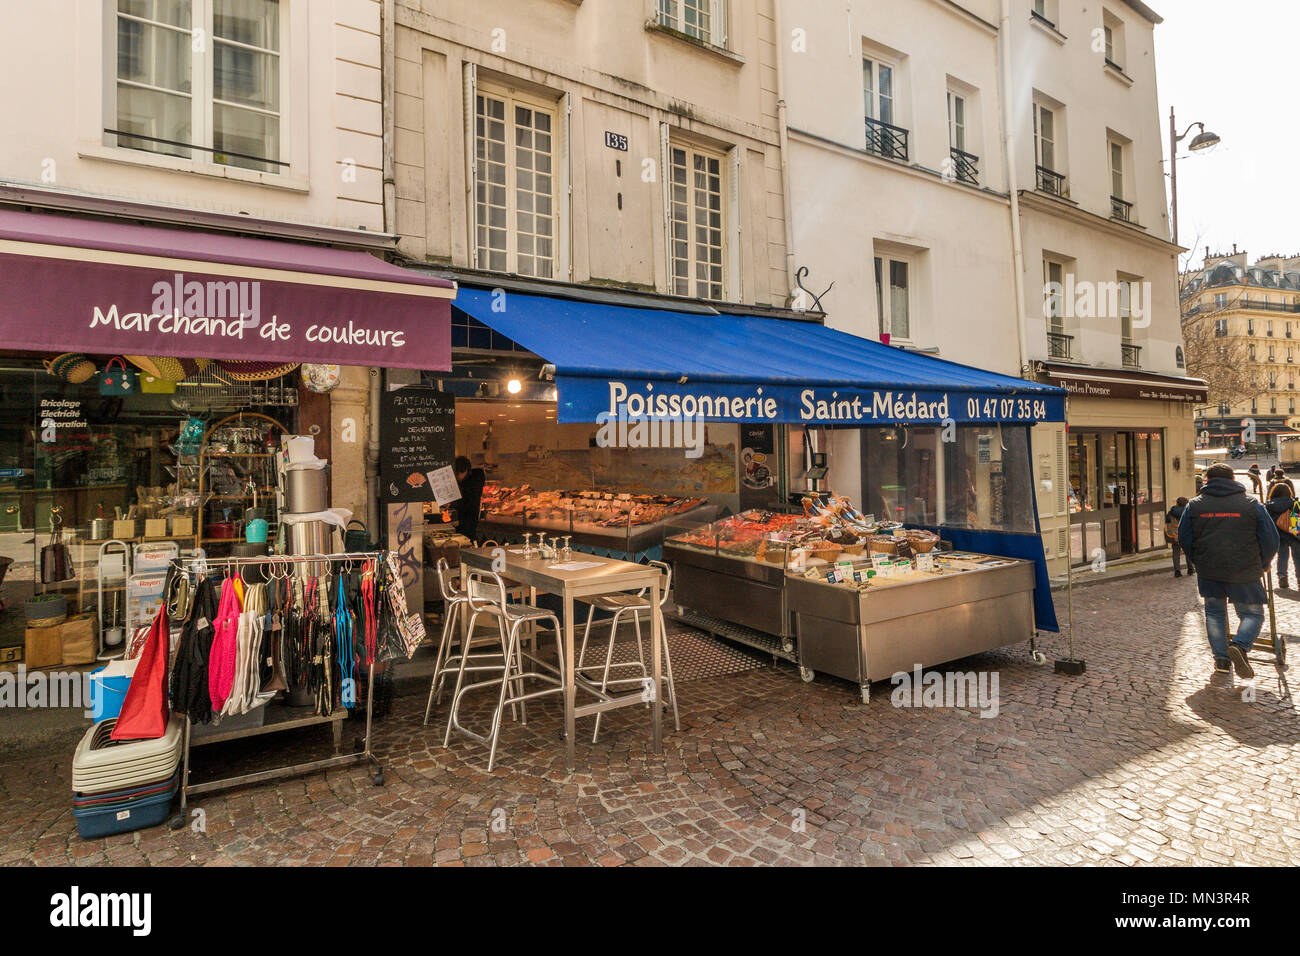 Fish Monger or Poissonnerie on Rue Mouffetard, Paris, France Stock Photo